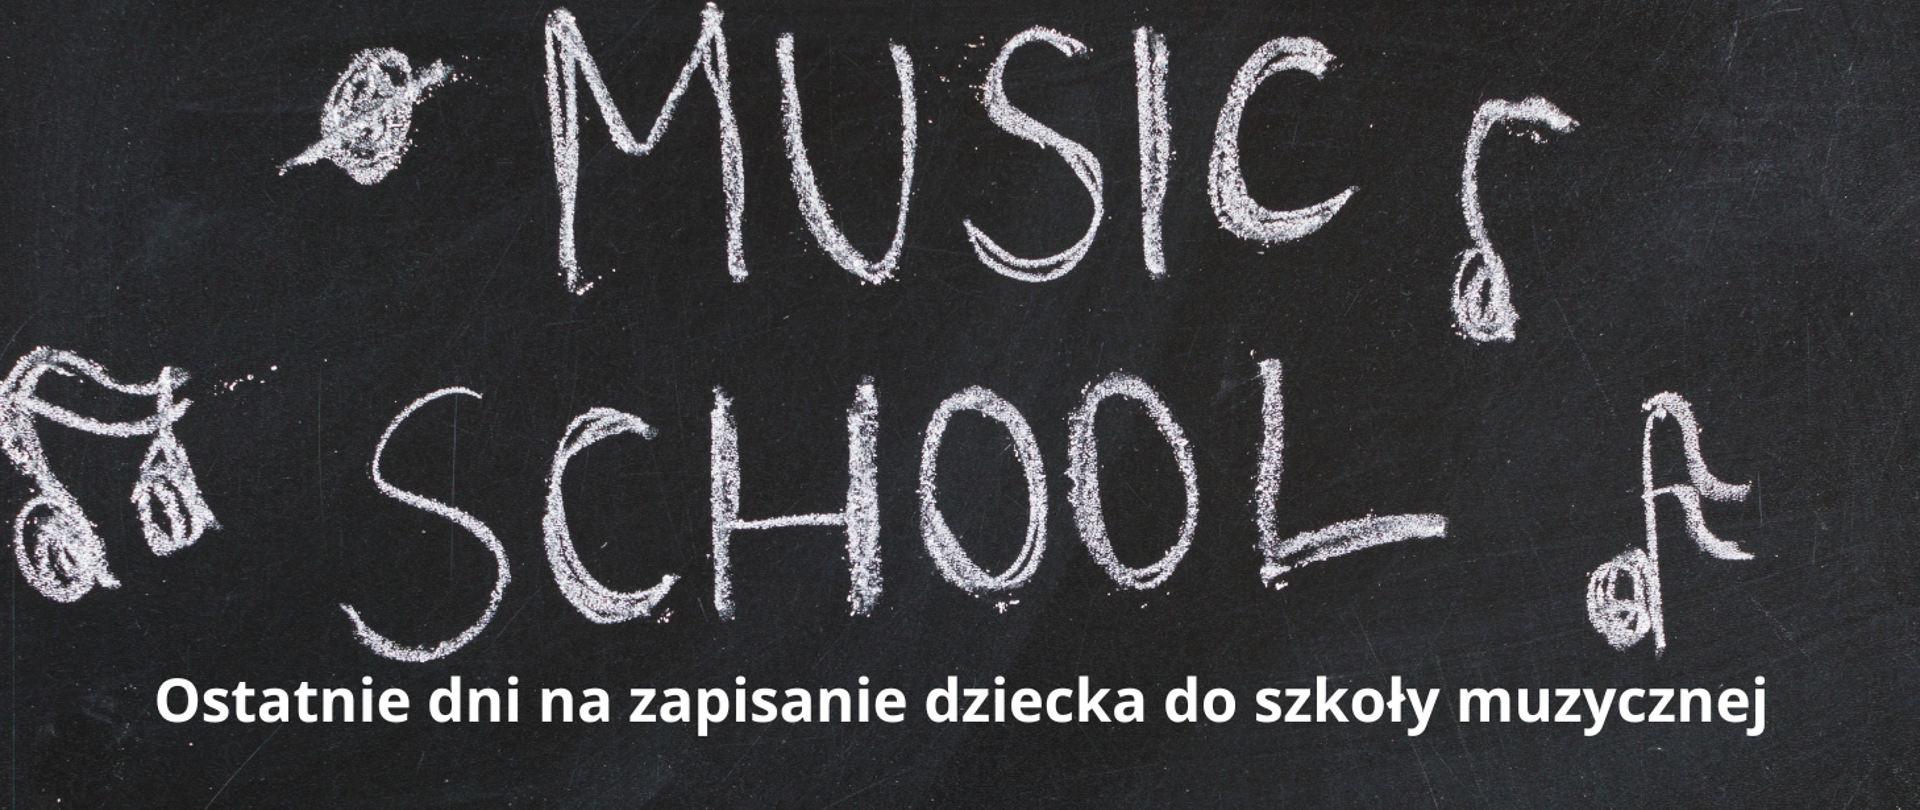 Plakat z klawiaturą fortepianu i tablicą z napisem o kończącej się rekrutacji do szkoły muzycznej